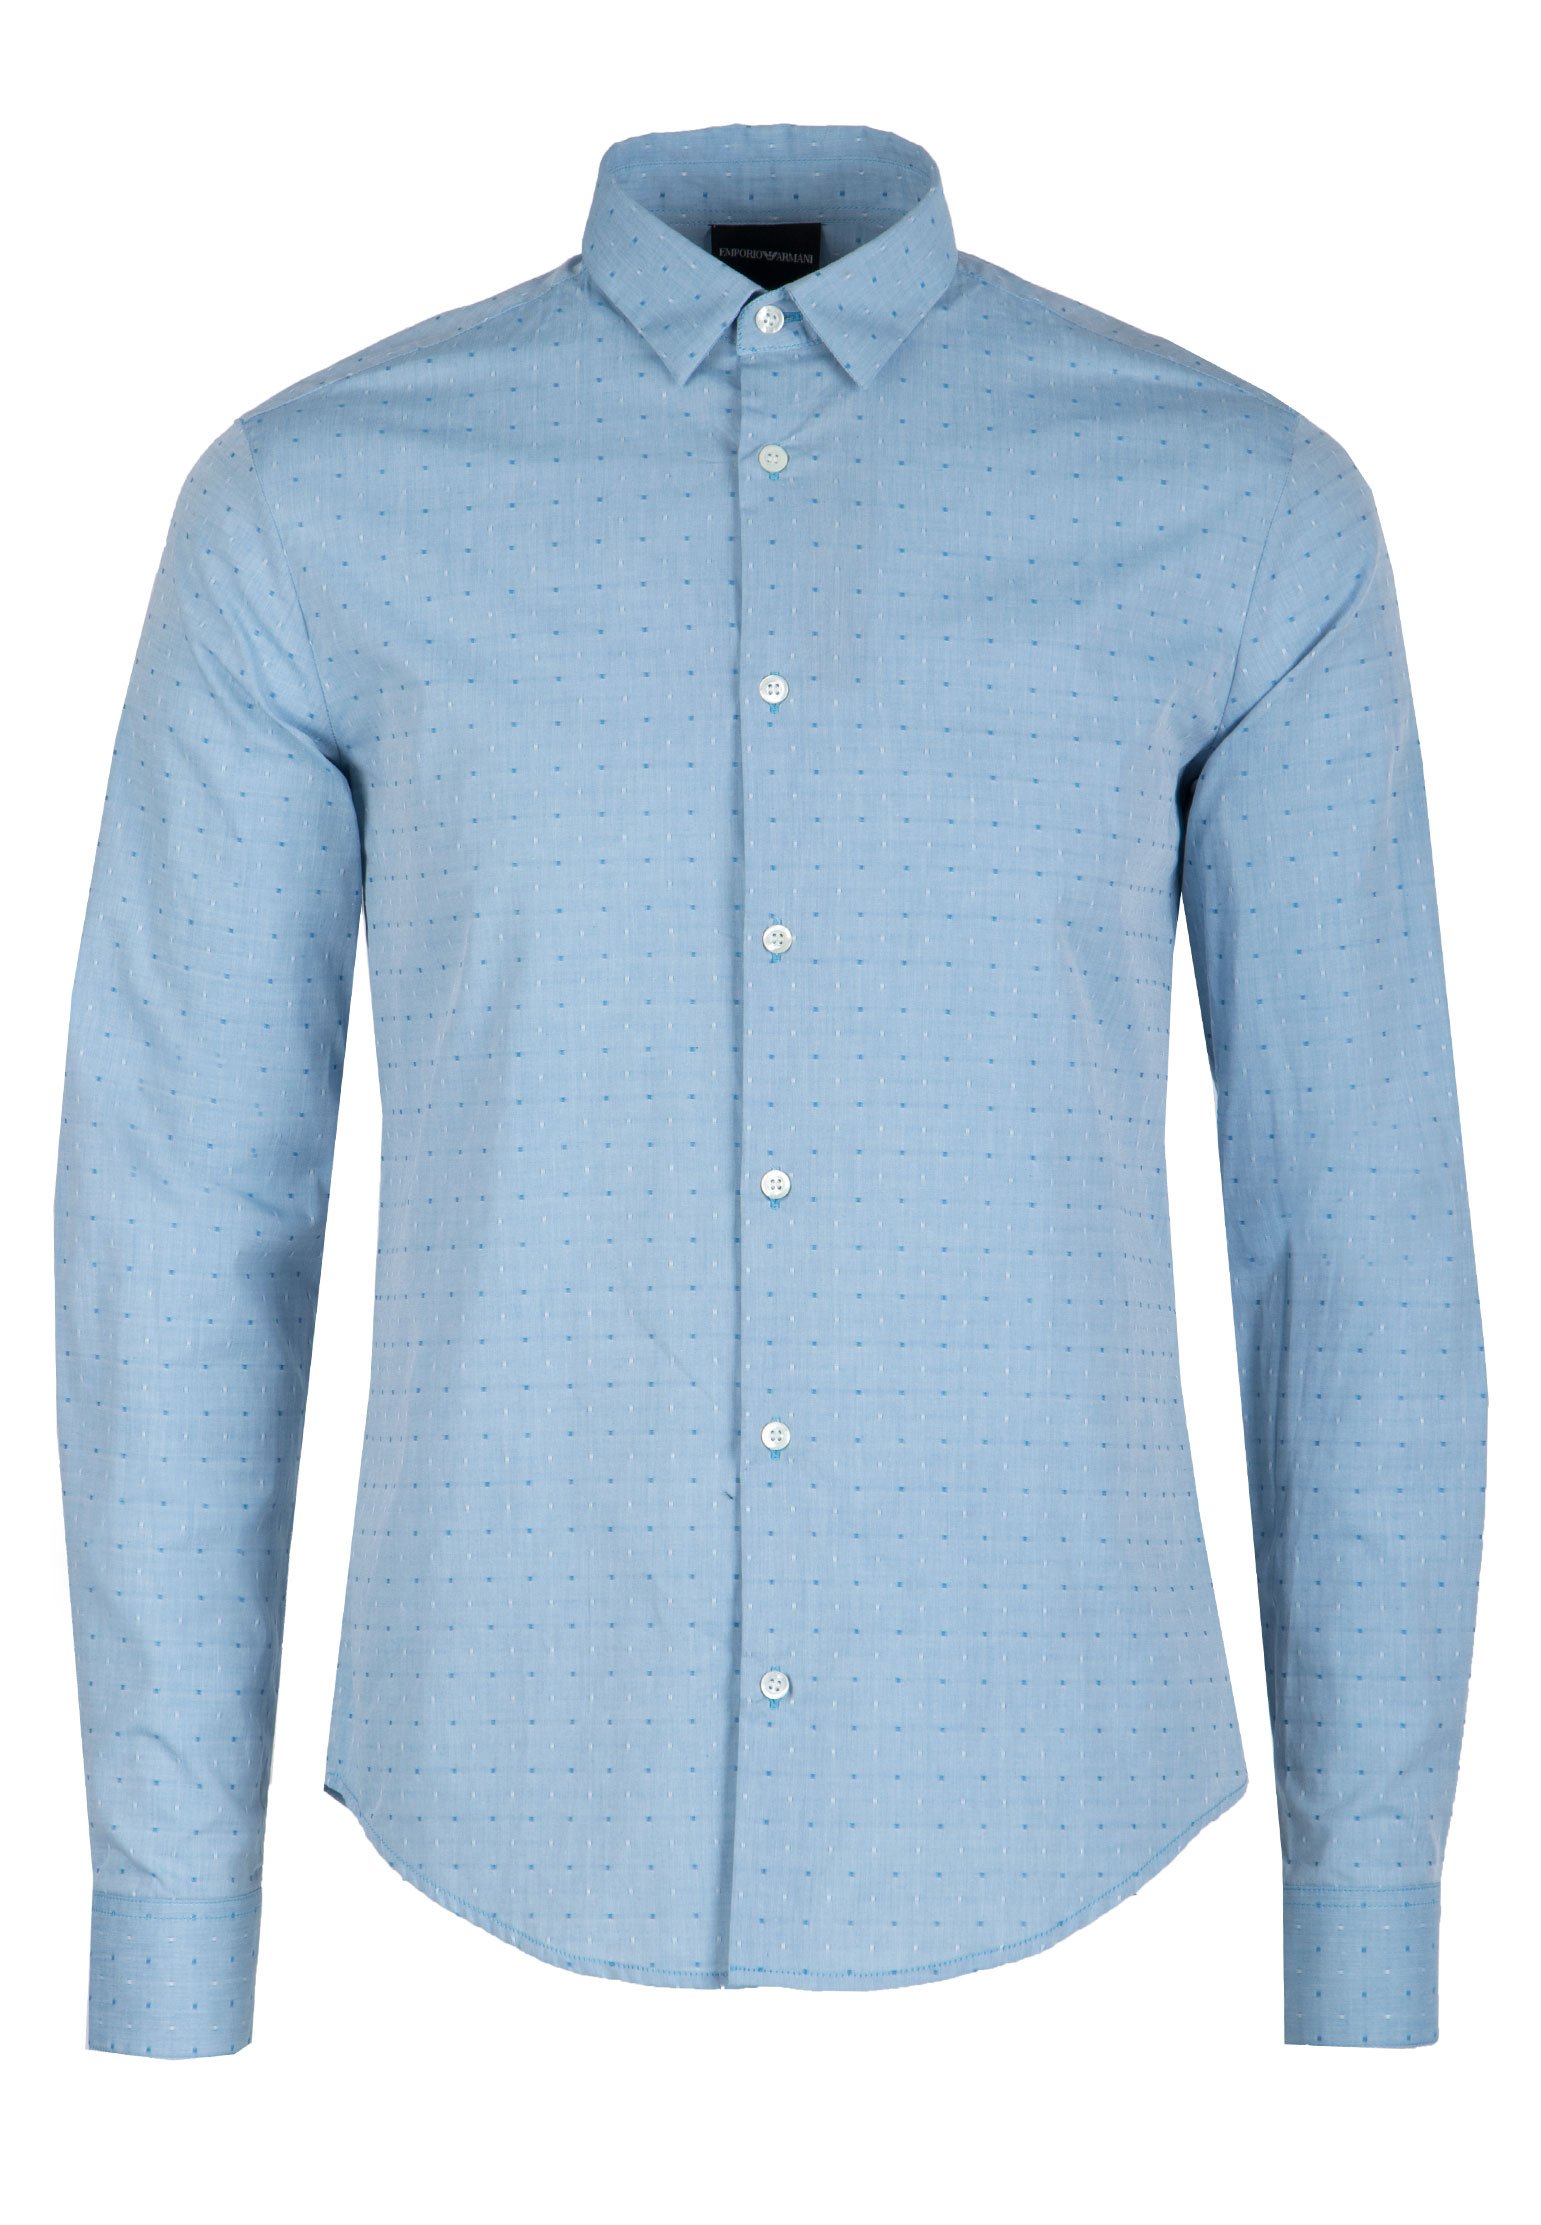 Рубашка мужская Emporio Armani 99149 голубая 3XL